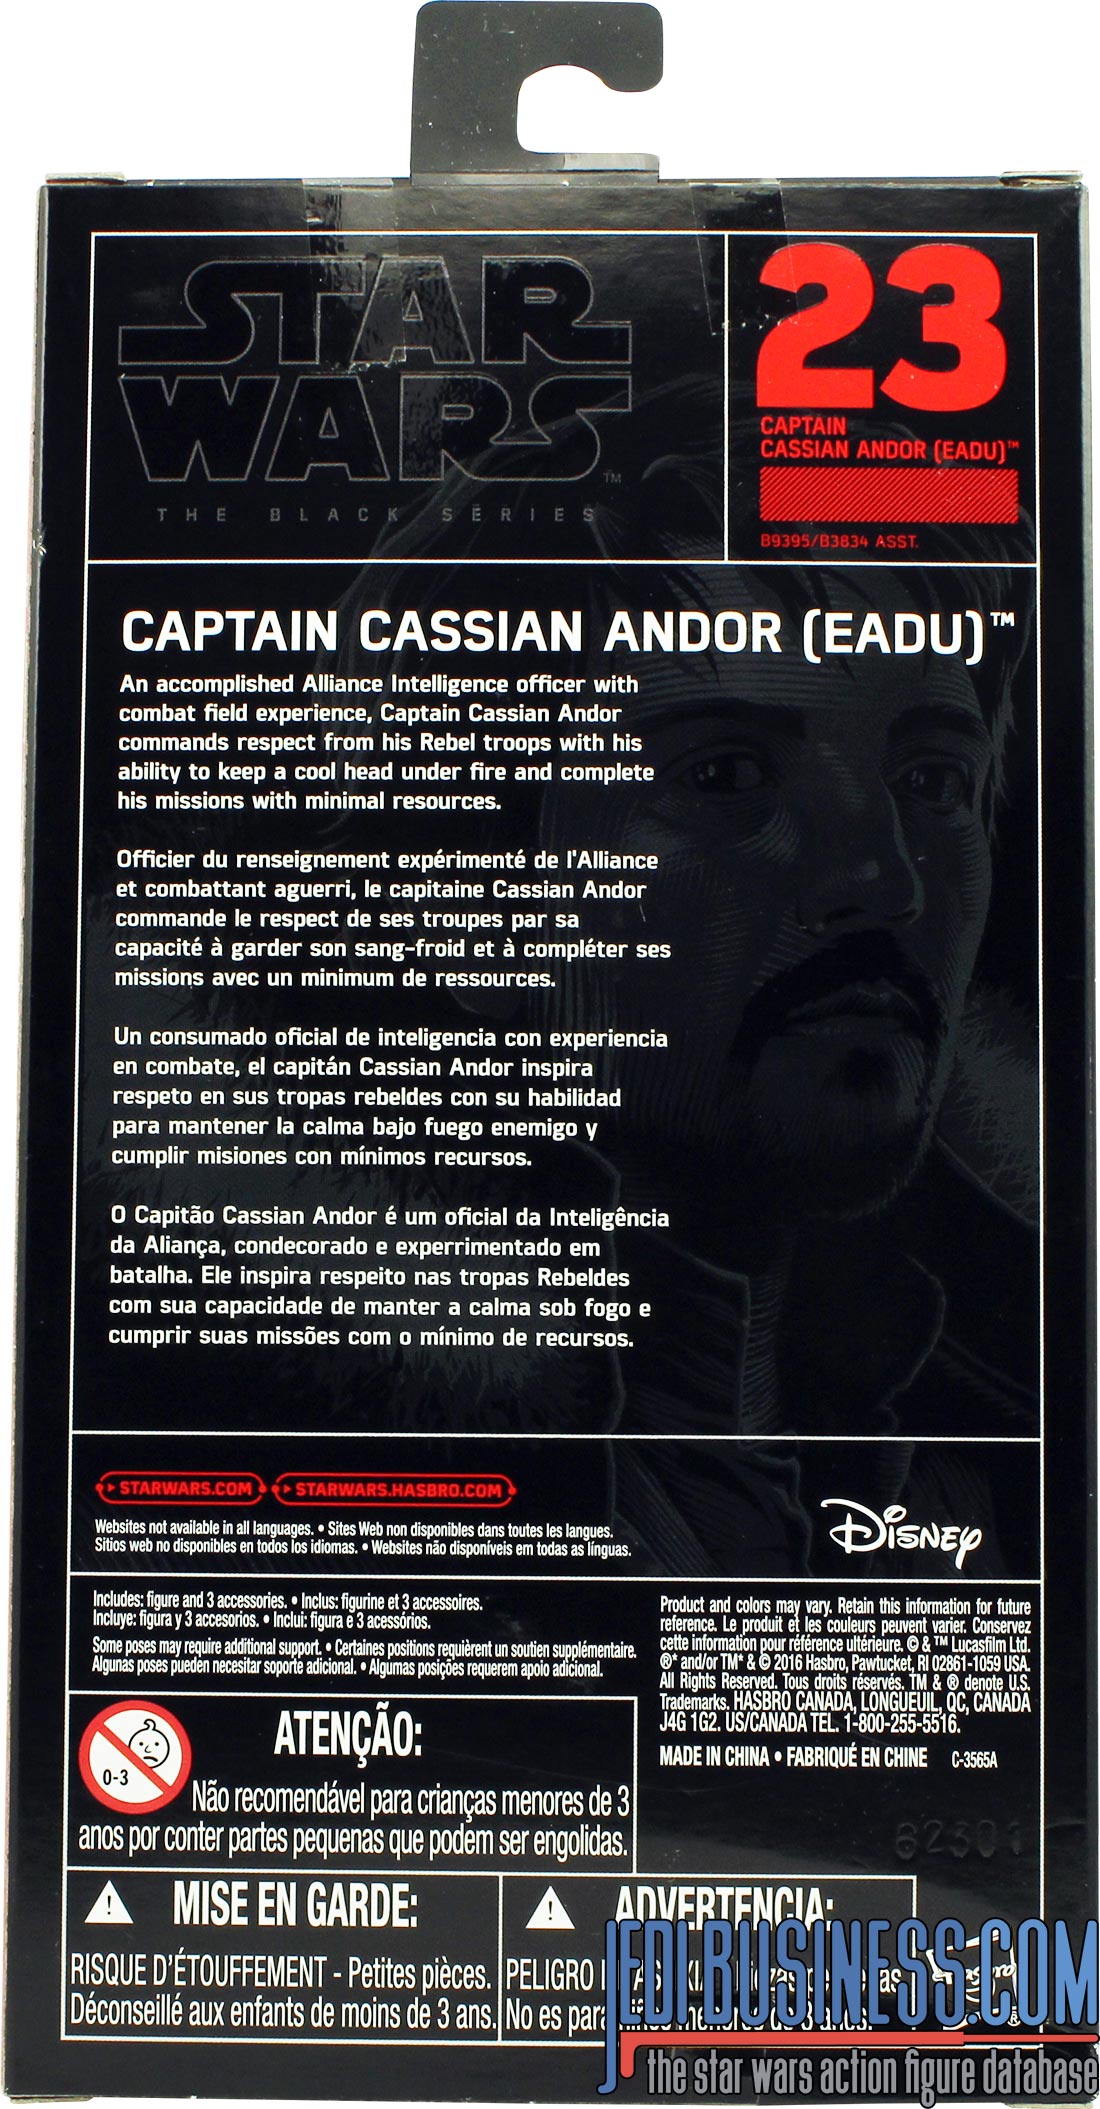 Cassian Andor Eadu